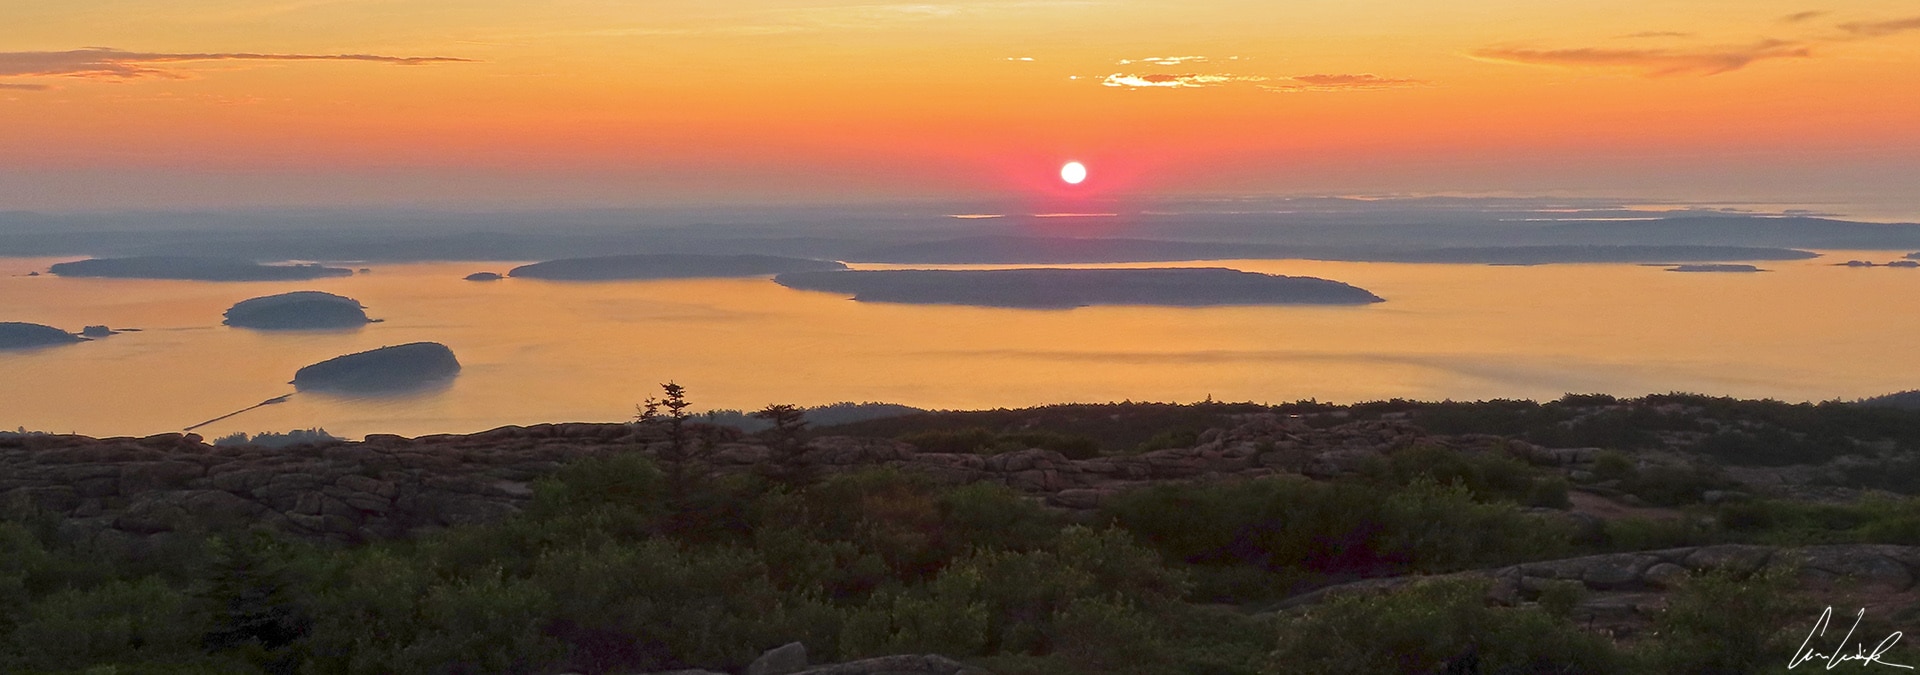 Le parc national d’Acadia: la nature à l’état brut dans le Maine